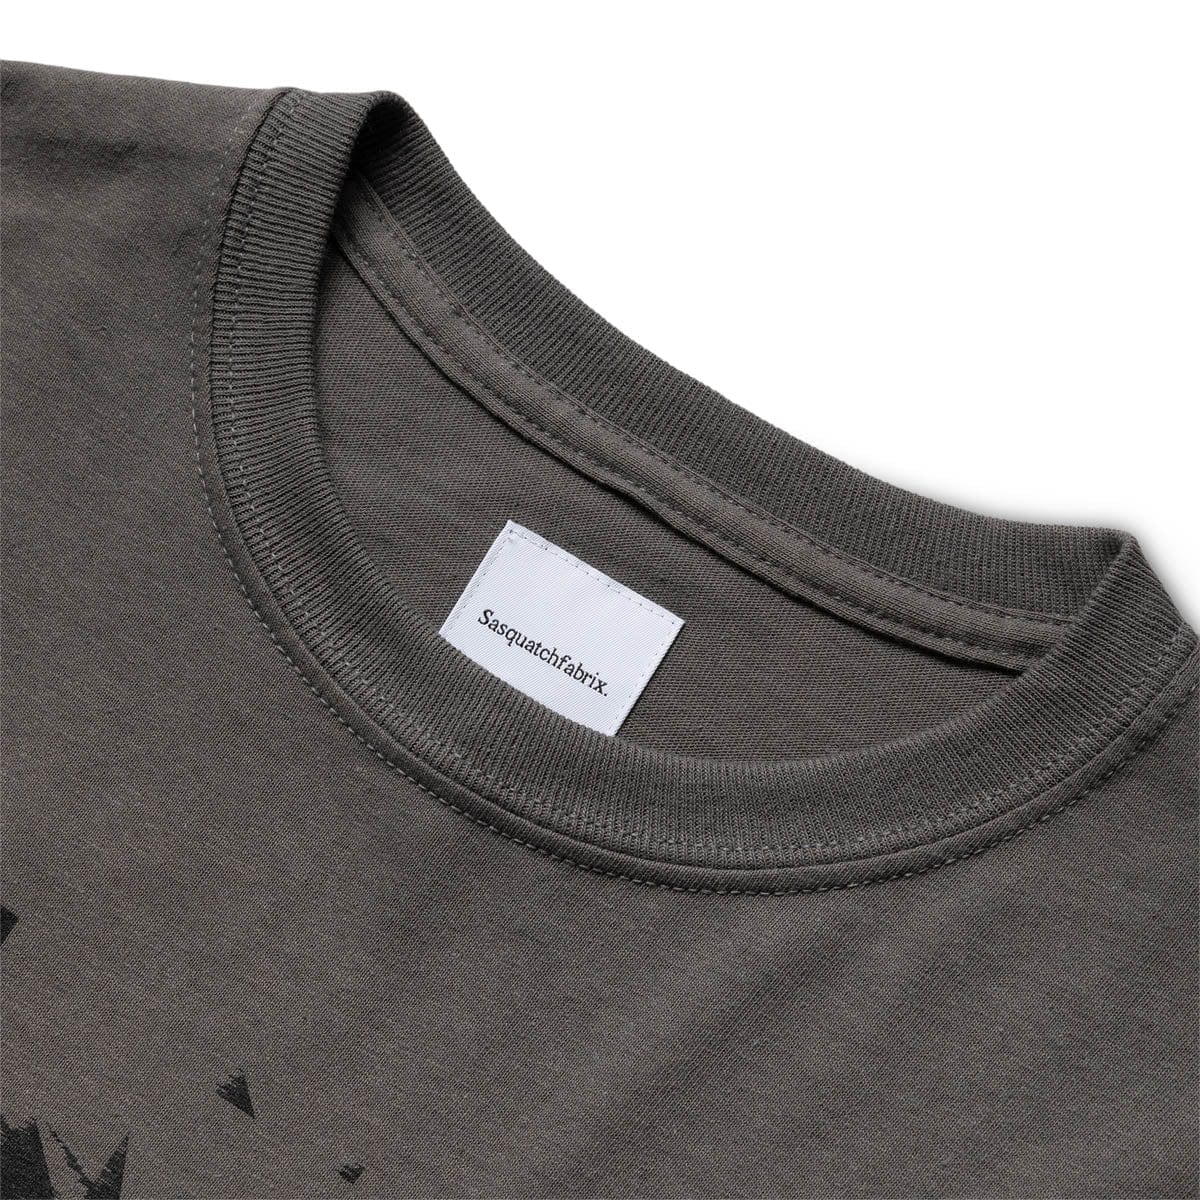 Sasquatchfabrix T-Shirts “ERROR HIPPIE” T-SHIRT